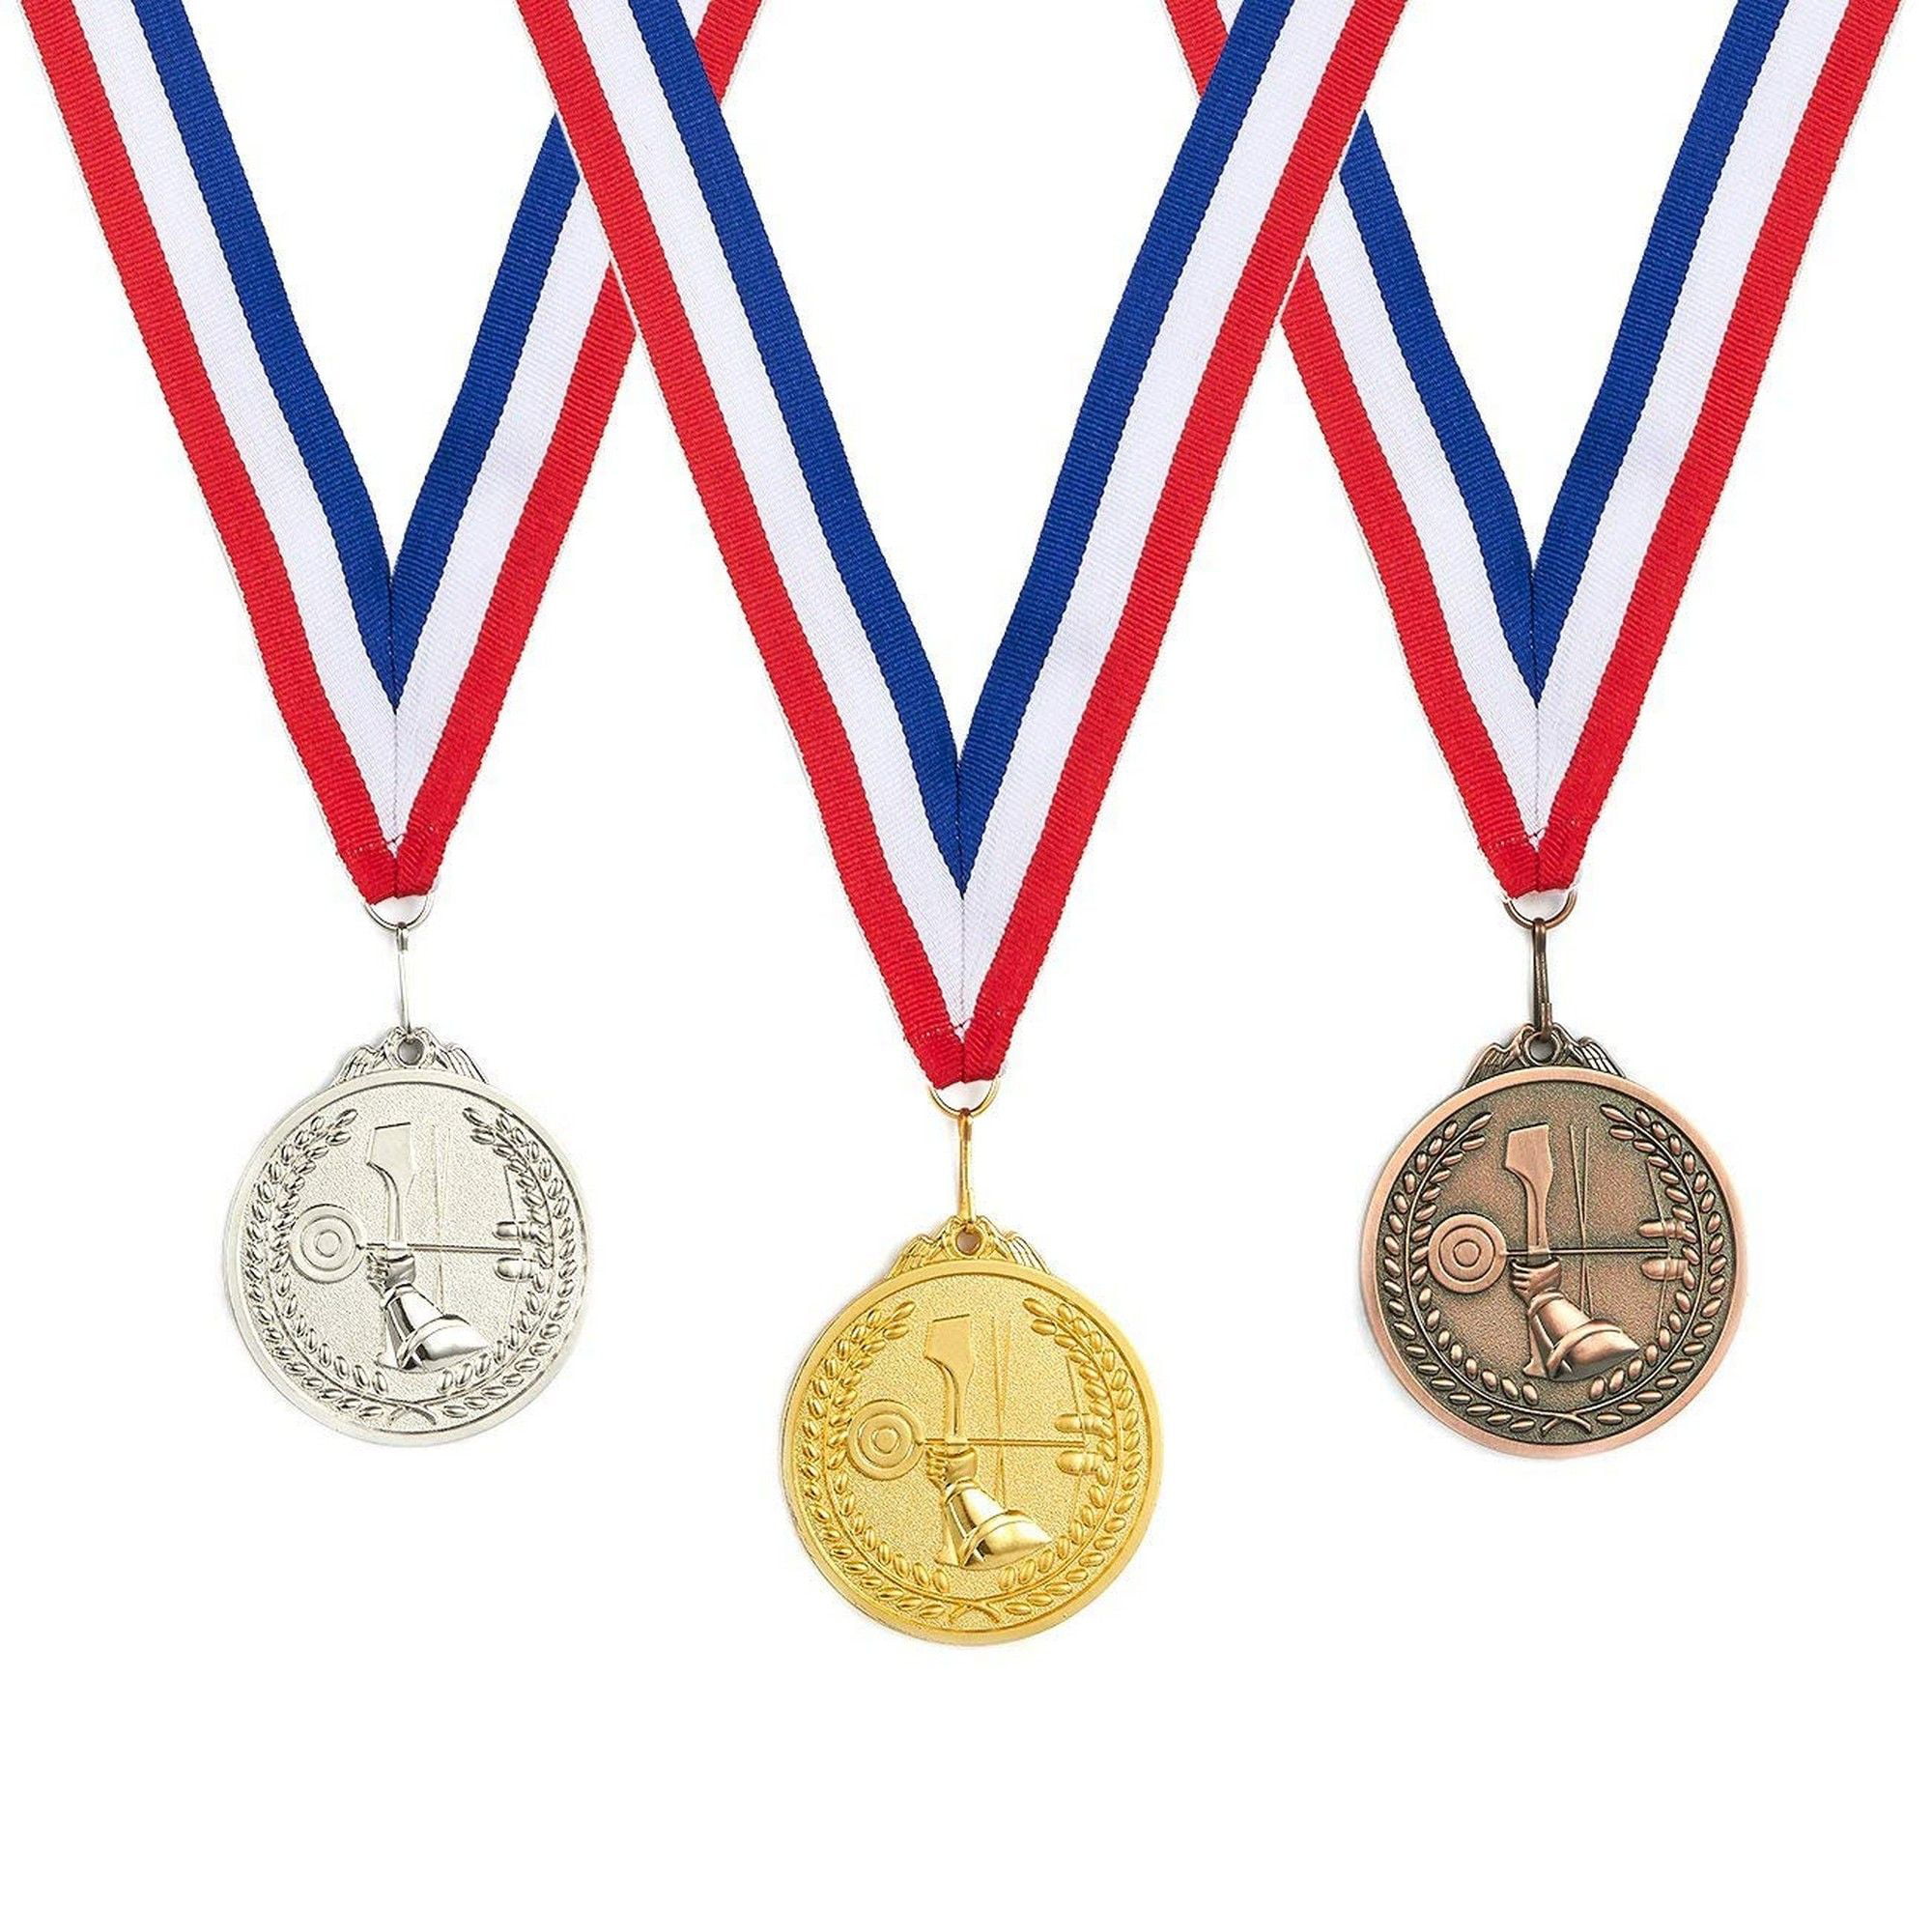 Windows medals. Медали спортивные. Спортивные награды. Спортивные медали на прозрачном фоне. Медали для детей спортивные.